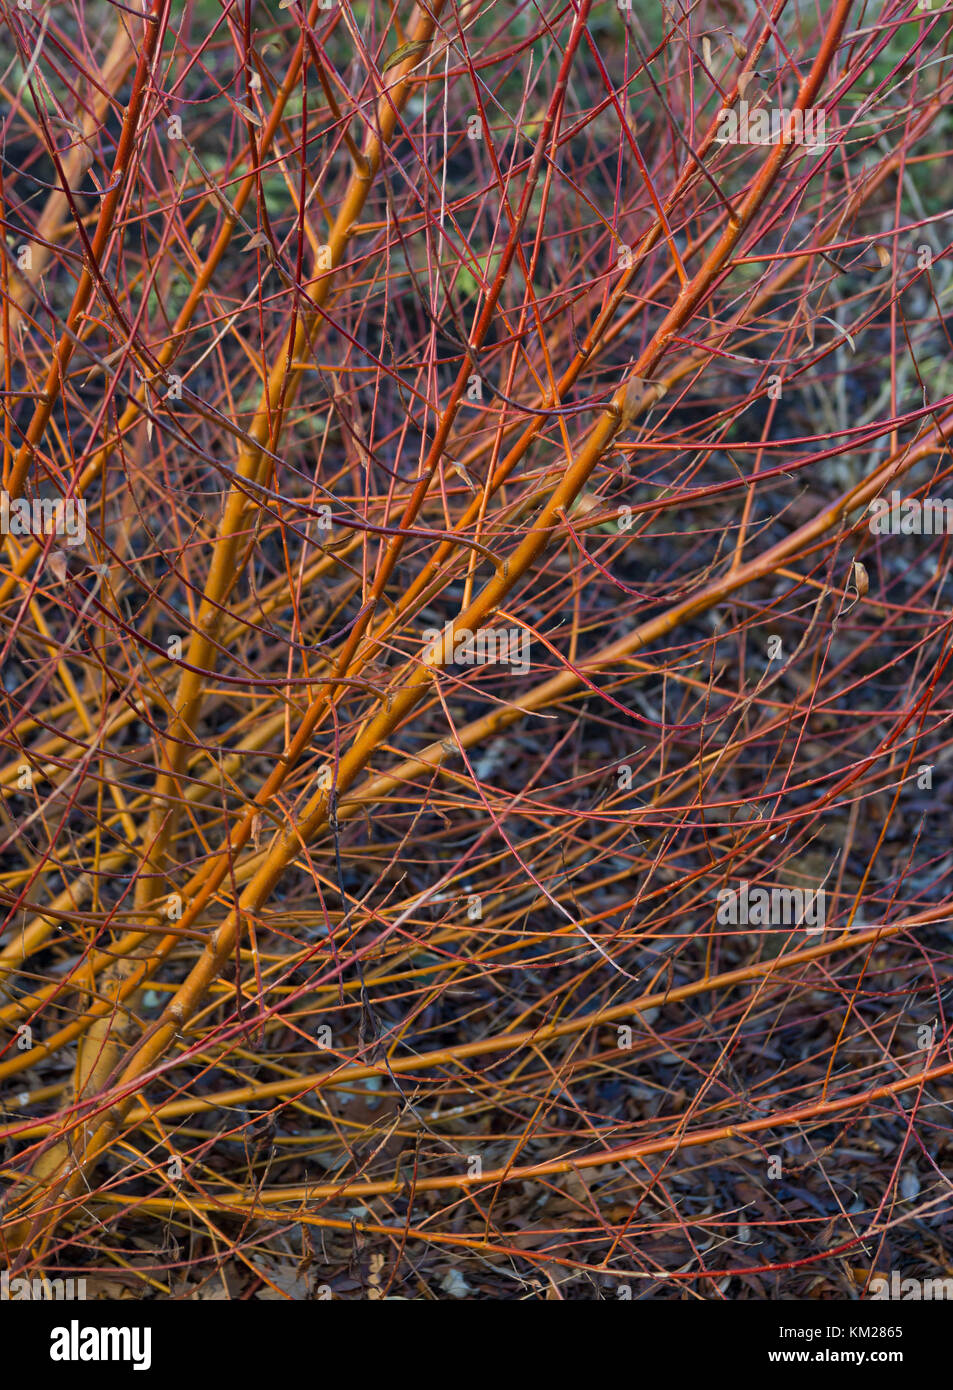 Salix alba var. vitellina 'Yelverton' Stock Photo